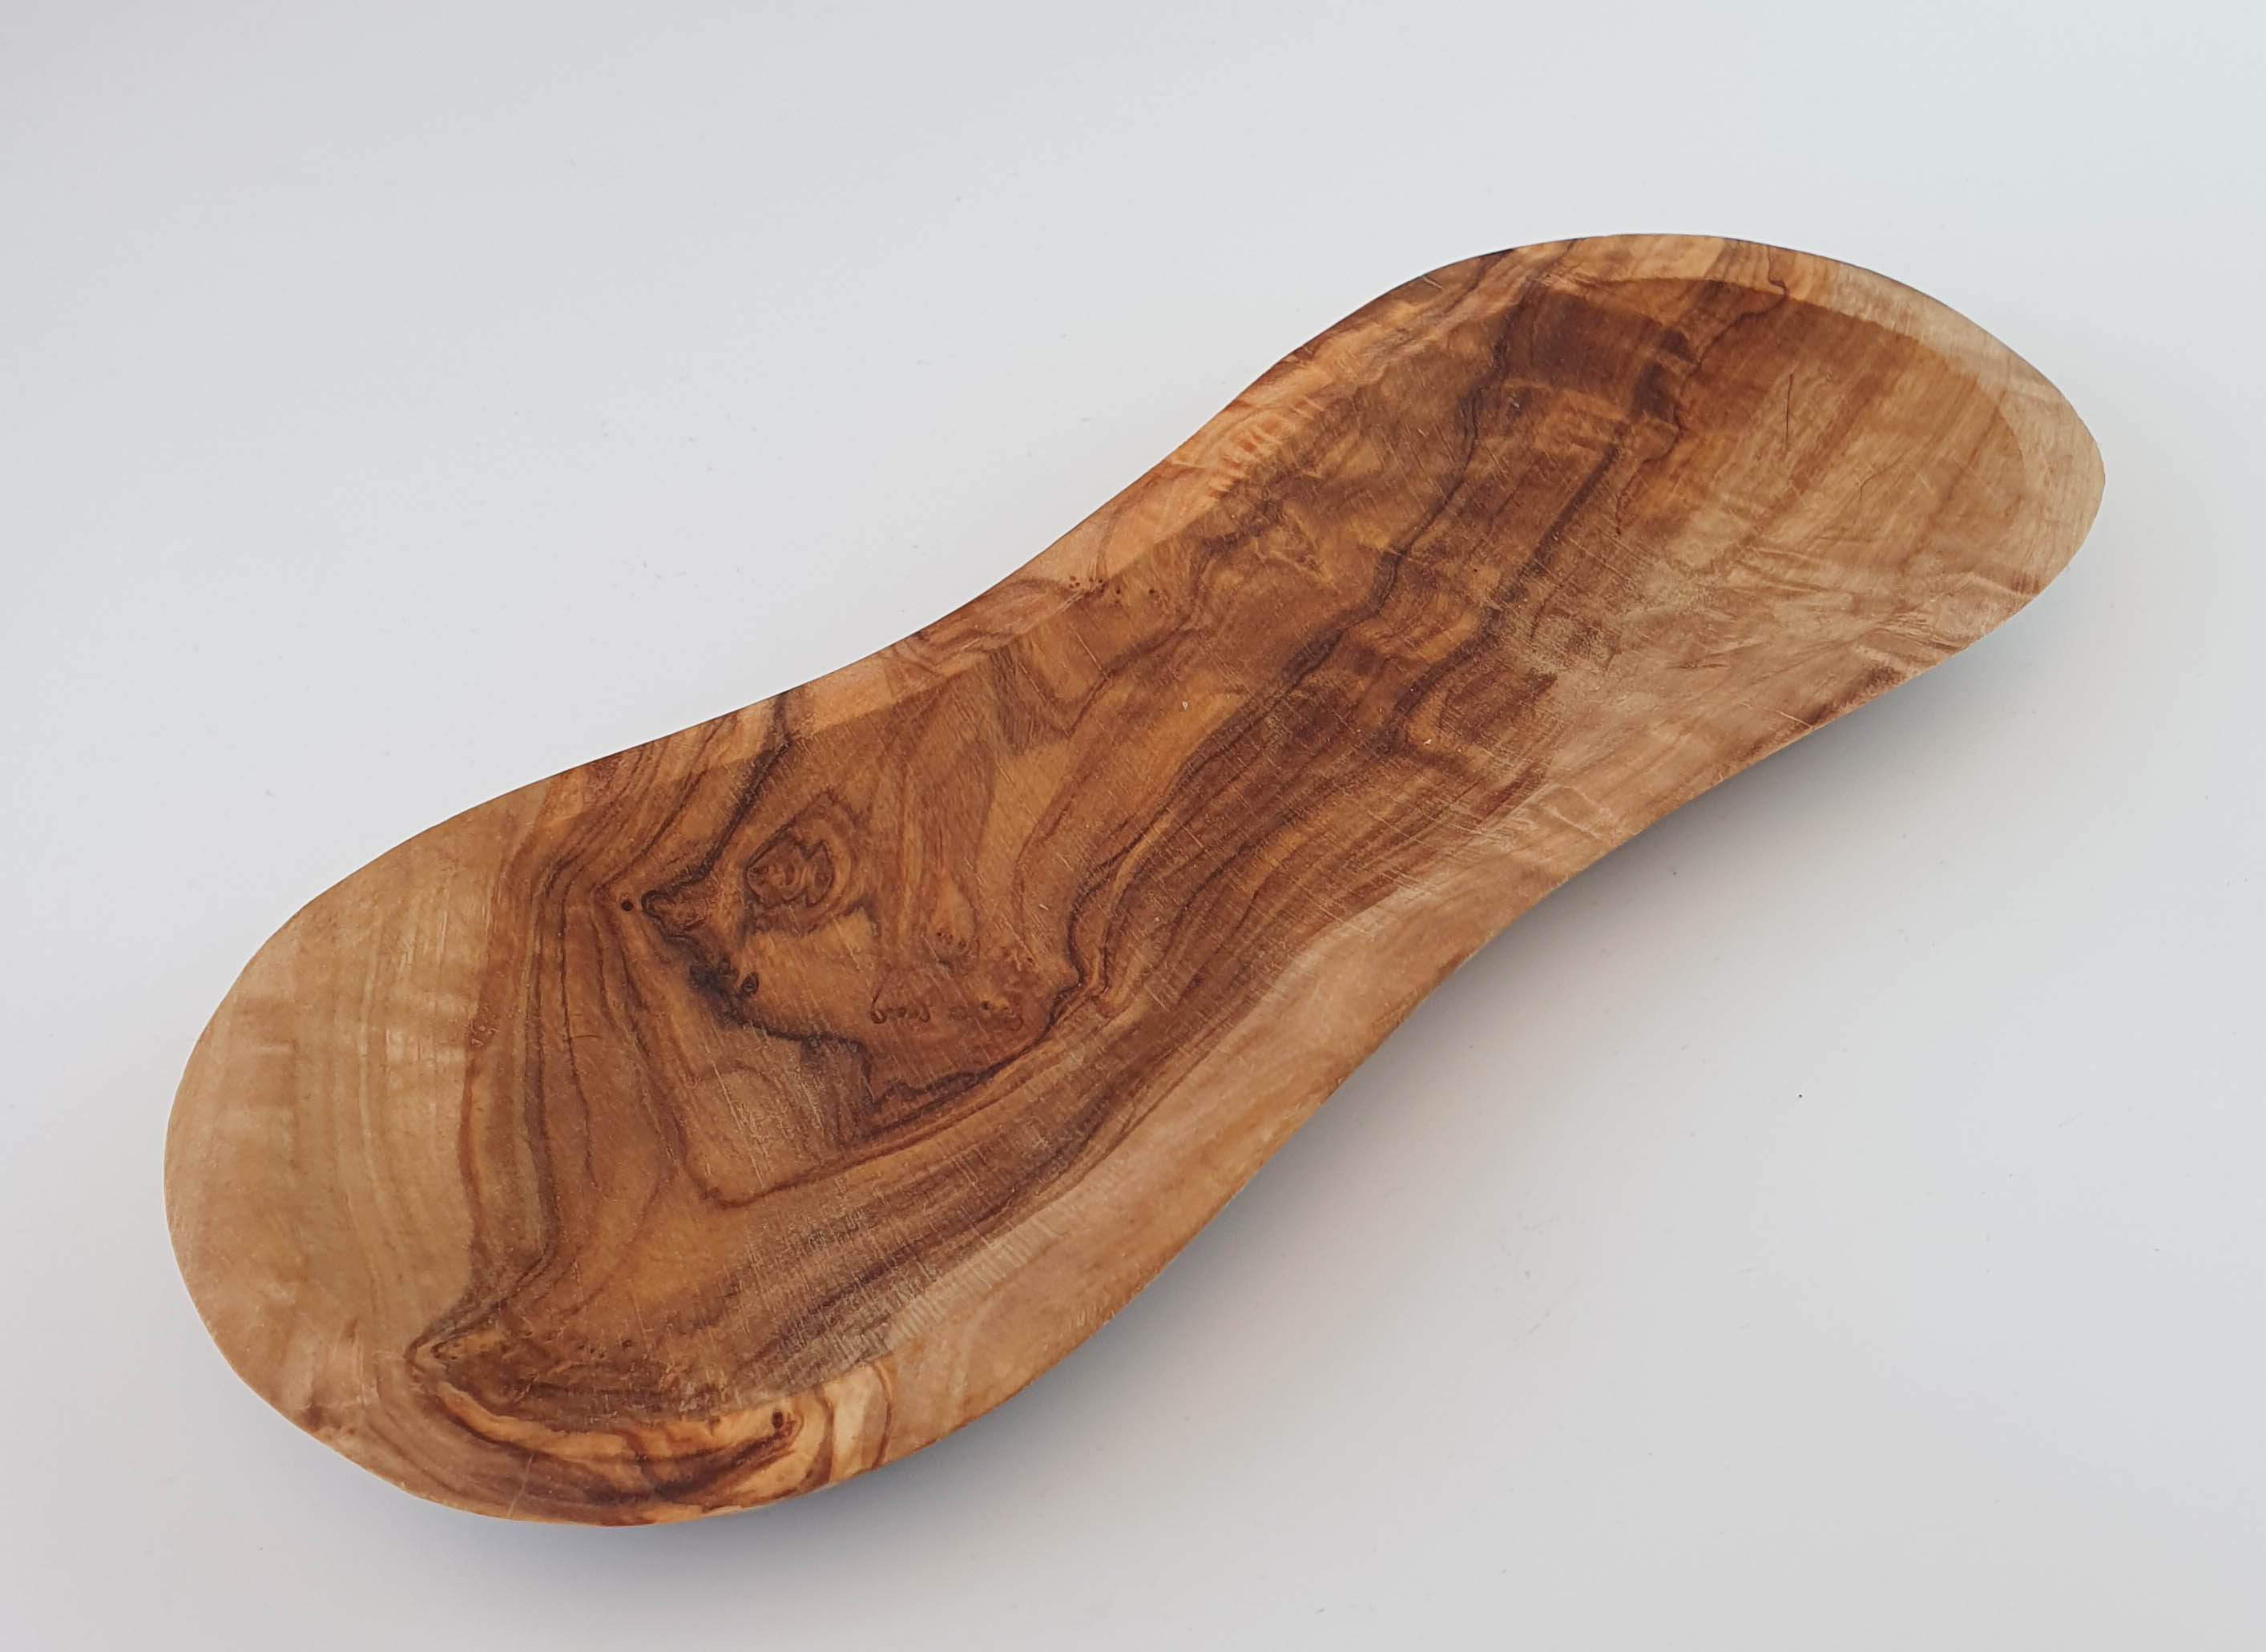 Plato de madera de olivo rústico en forma de cacahuete de 22x9cm.